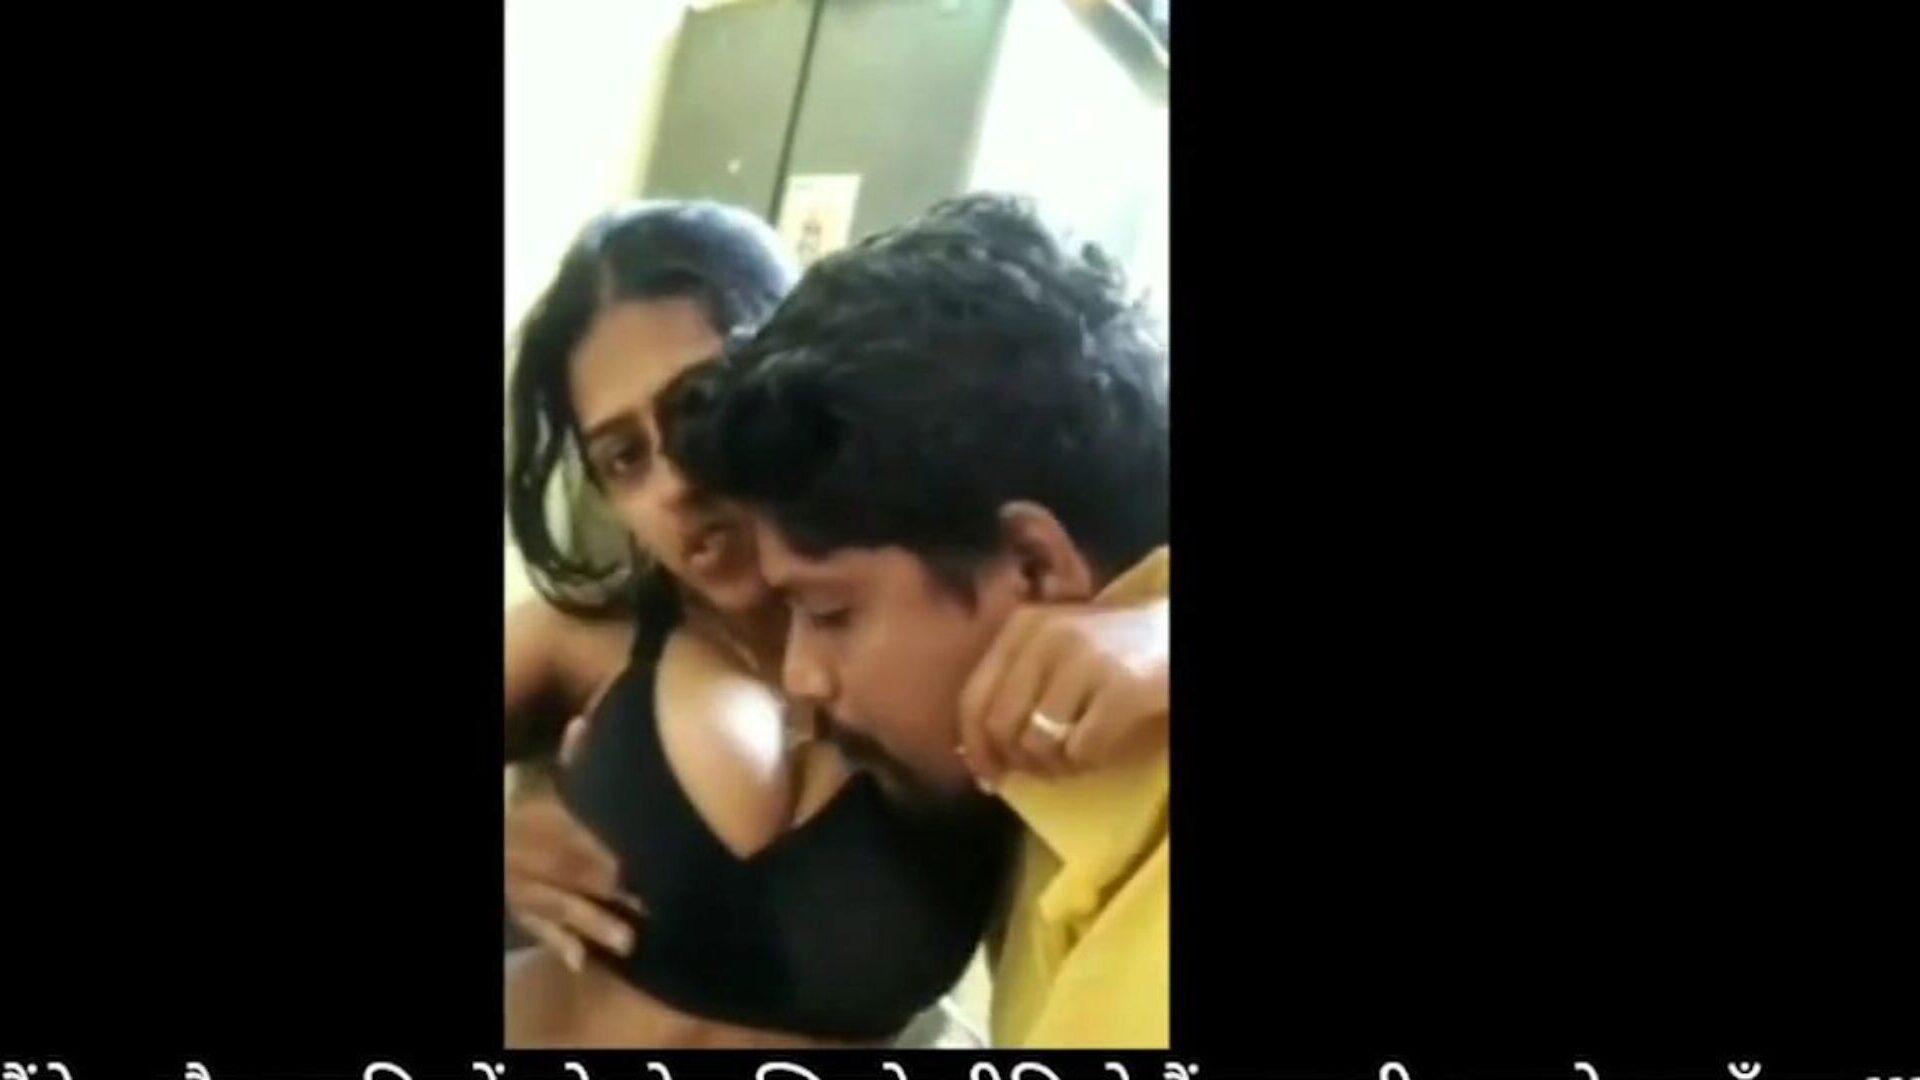 bhabhi devar home sex fun κατά το κλείδωμα: δωρεάν hd porn fa watch bhabhi devar home sex fun κατά το επεισόδιο κλειδώματος στο xhamster - το απόλυτο αρχείο του δωρεάν ινδικού δωρεάν οικιακού σεξ hd xxx πορνό πορνογραφικού βίντεο